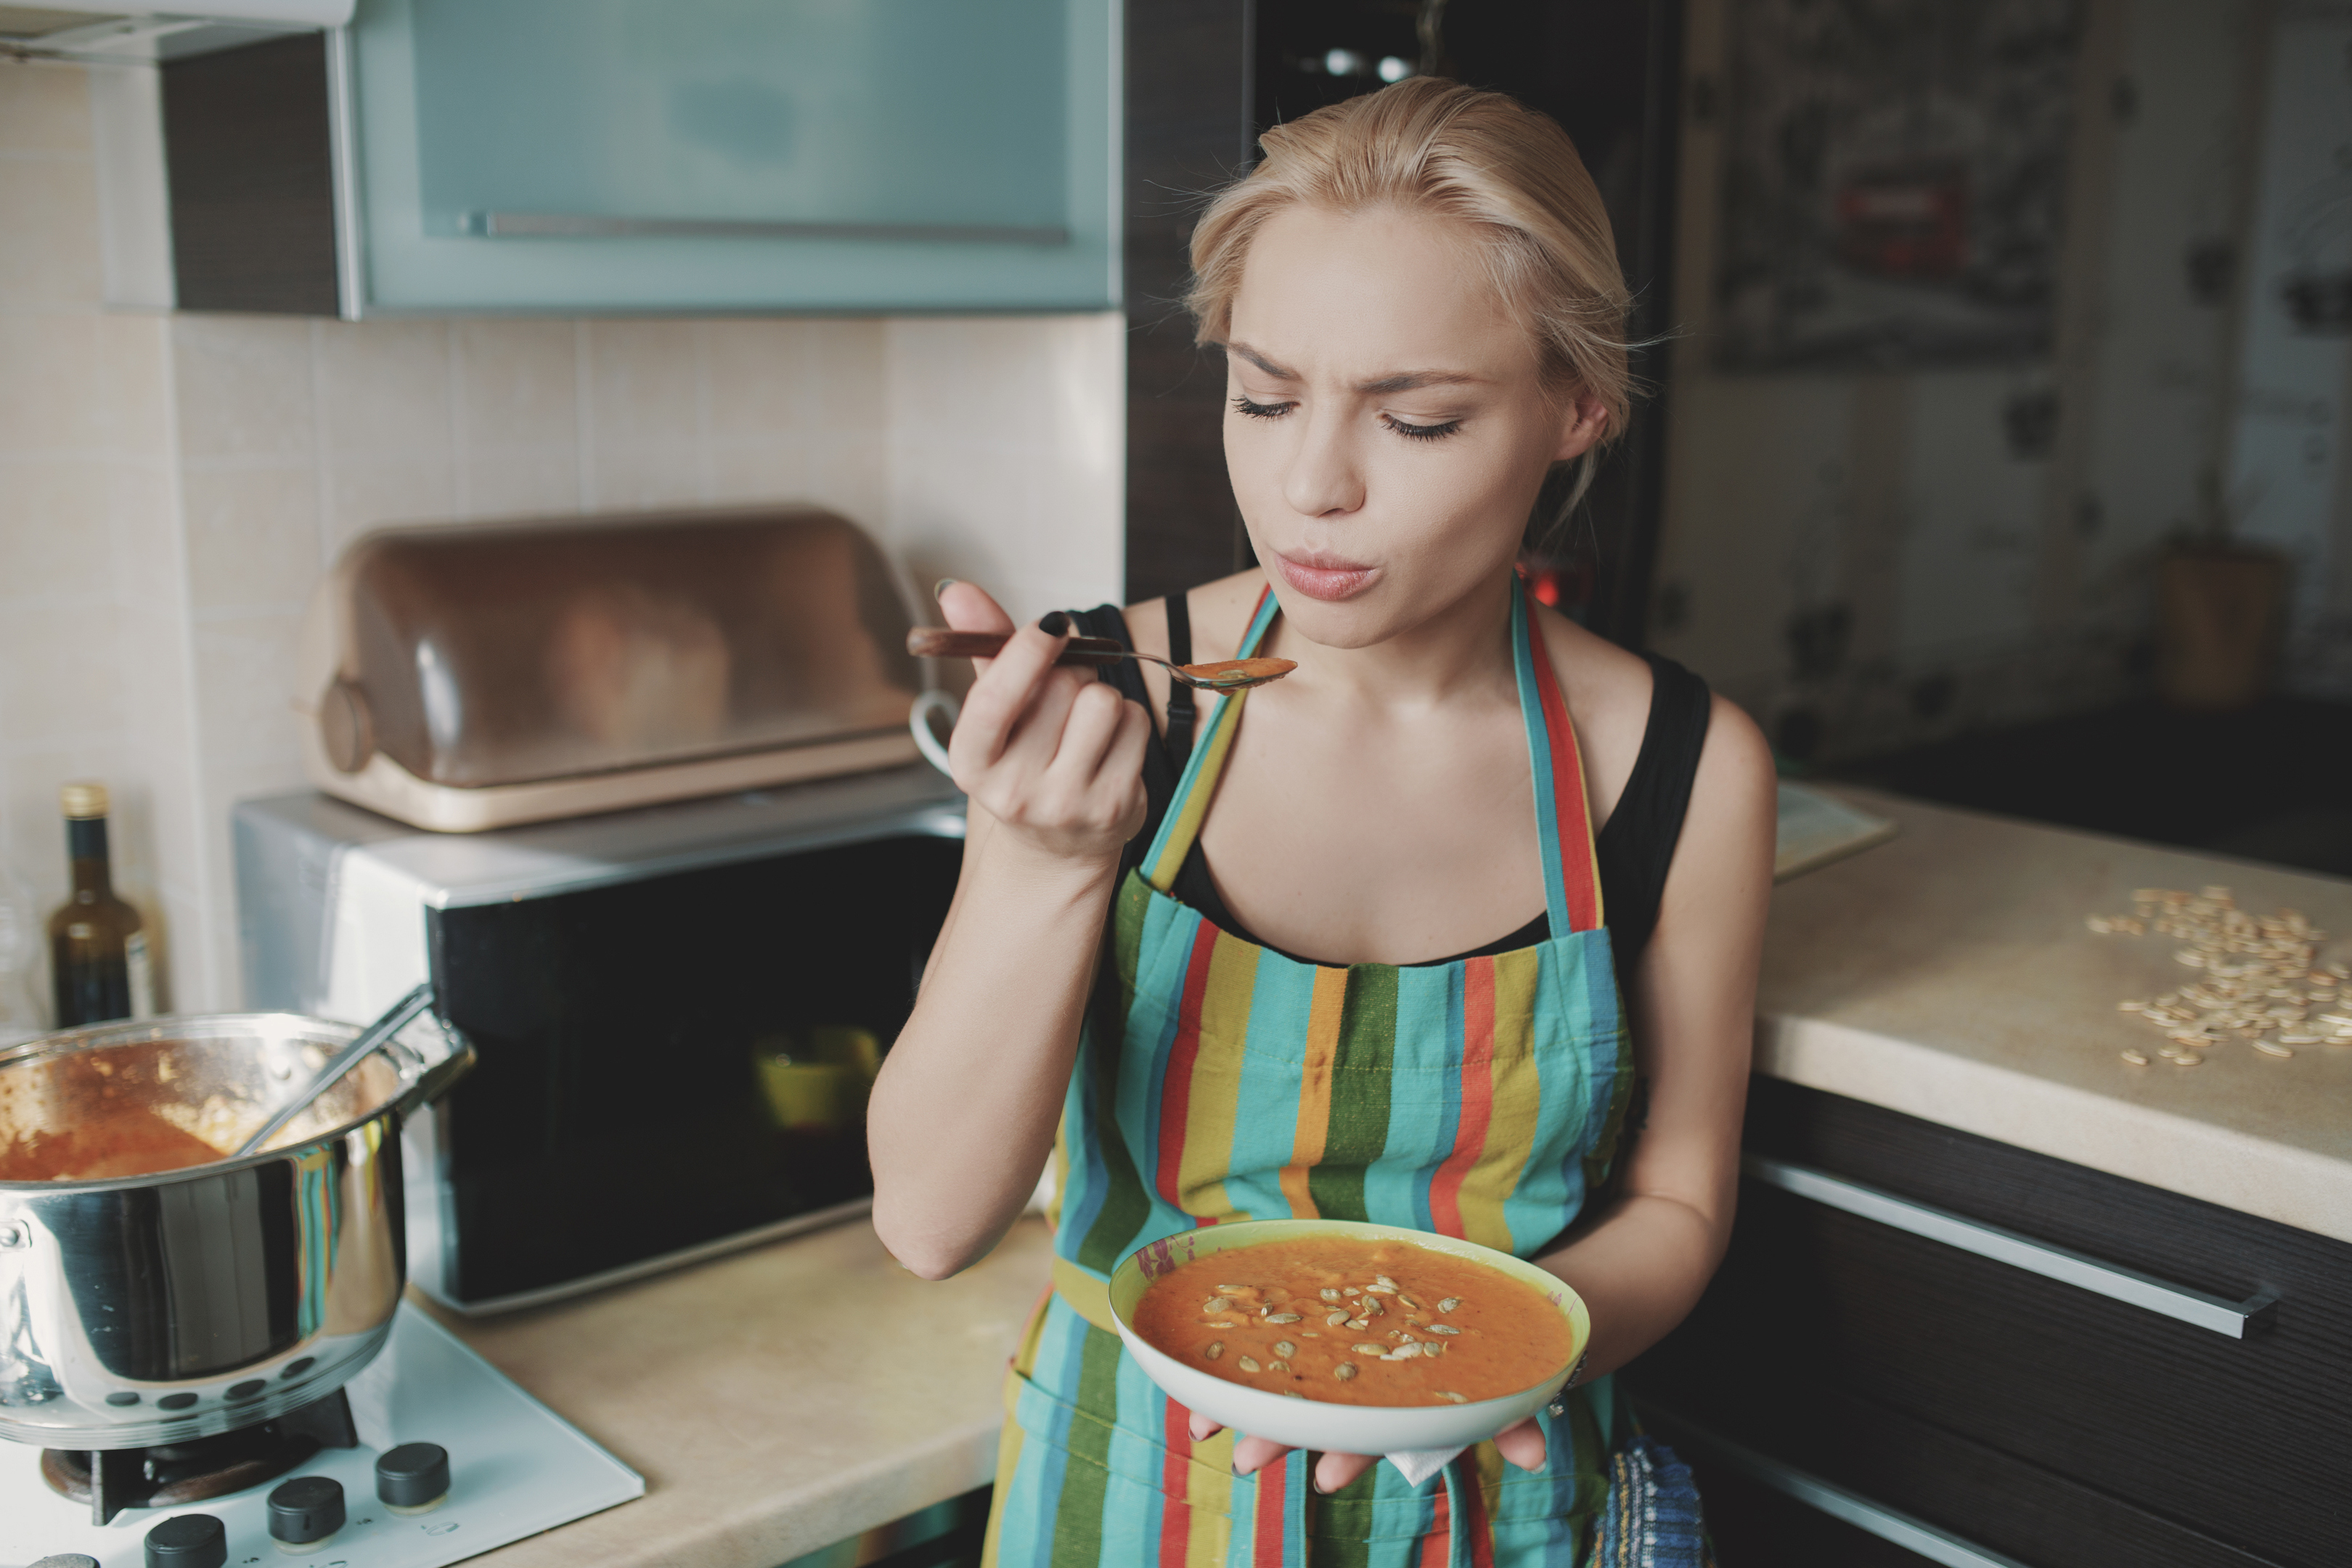 Young woman enjoying pumpkin soup in kitchen (thinkstock/pa)